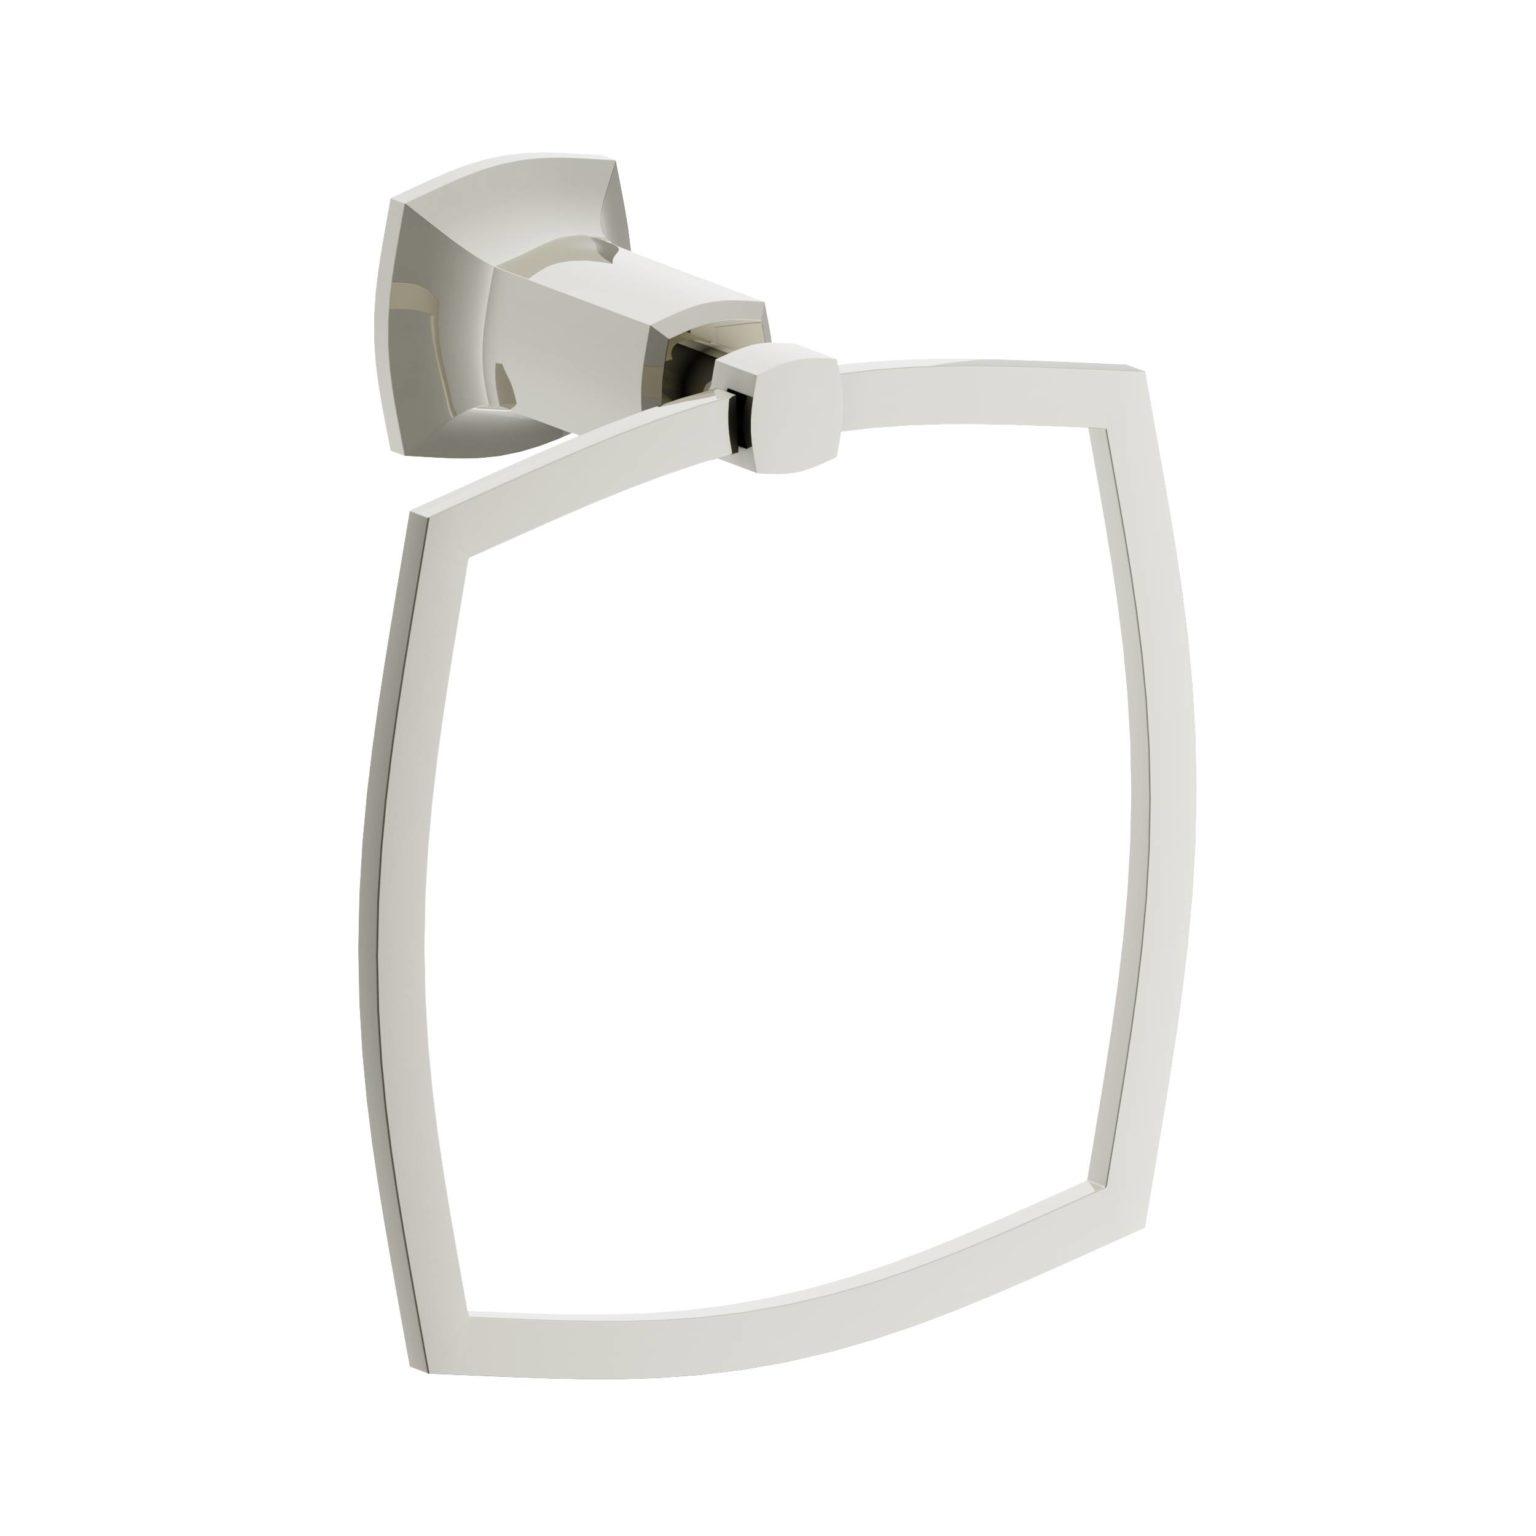 3D - Towel Ring